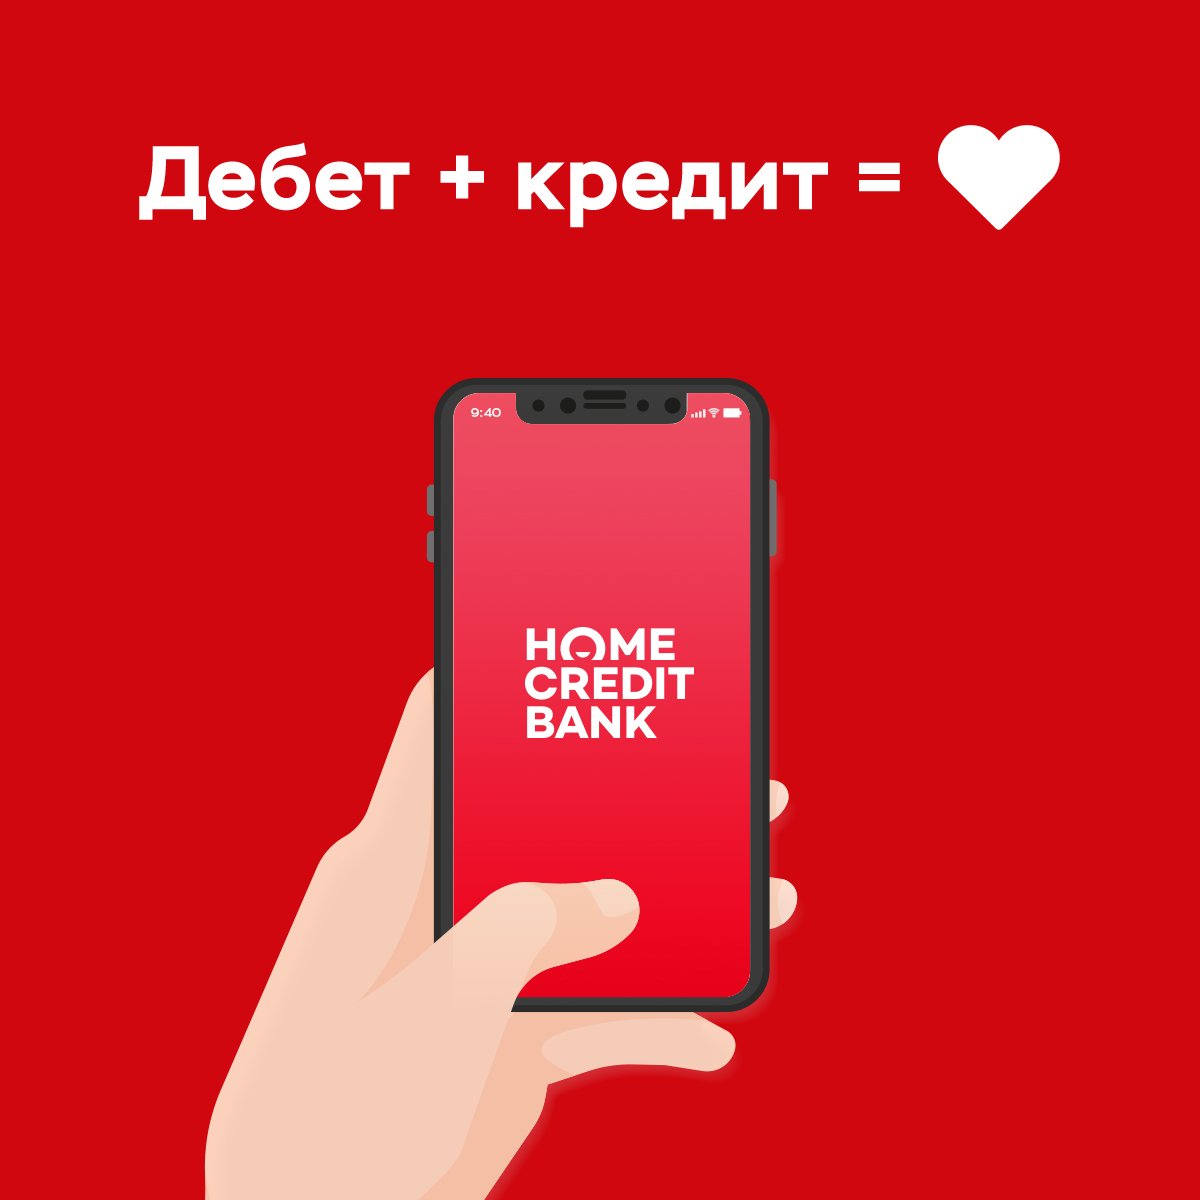 Хом банк хоум телефон. Хоум банк приложение. Мобильное приложение банка Home credit. Хоум кредит банк. Мобильный банк хоум кредит.